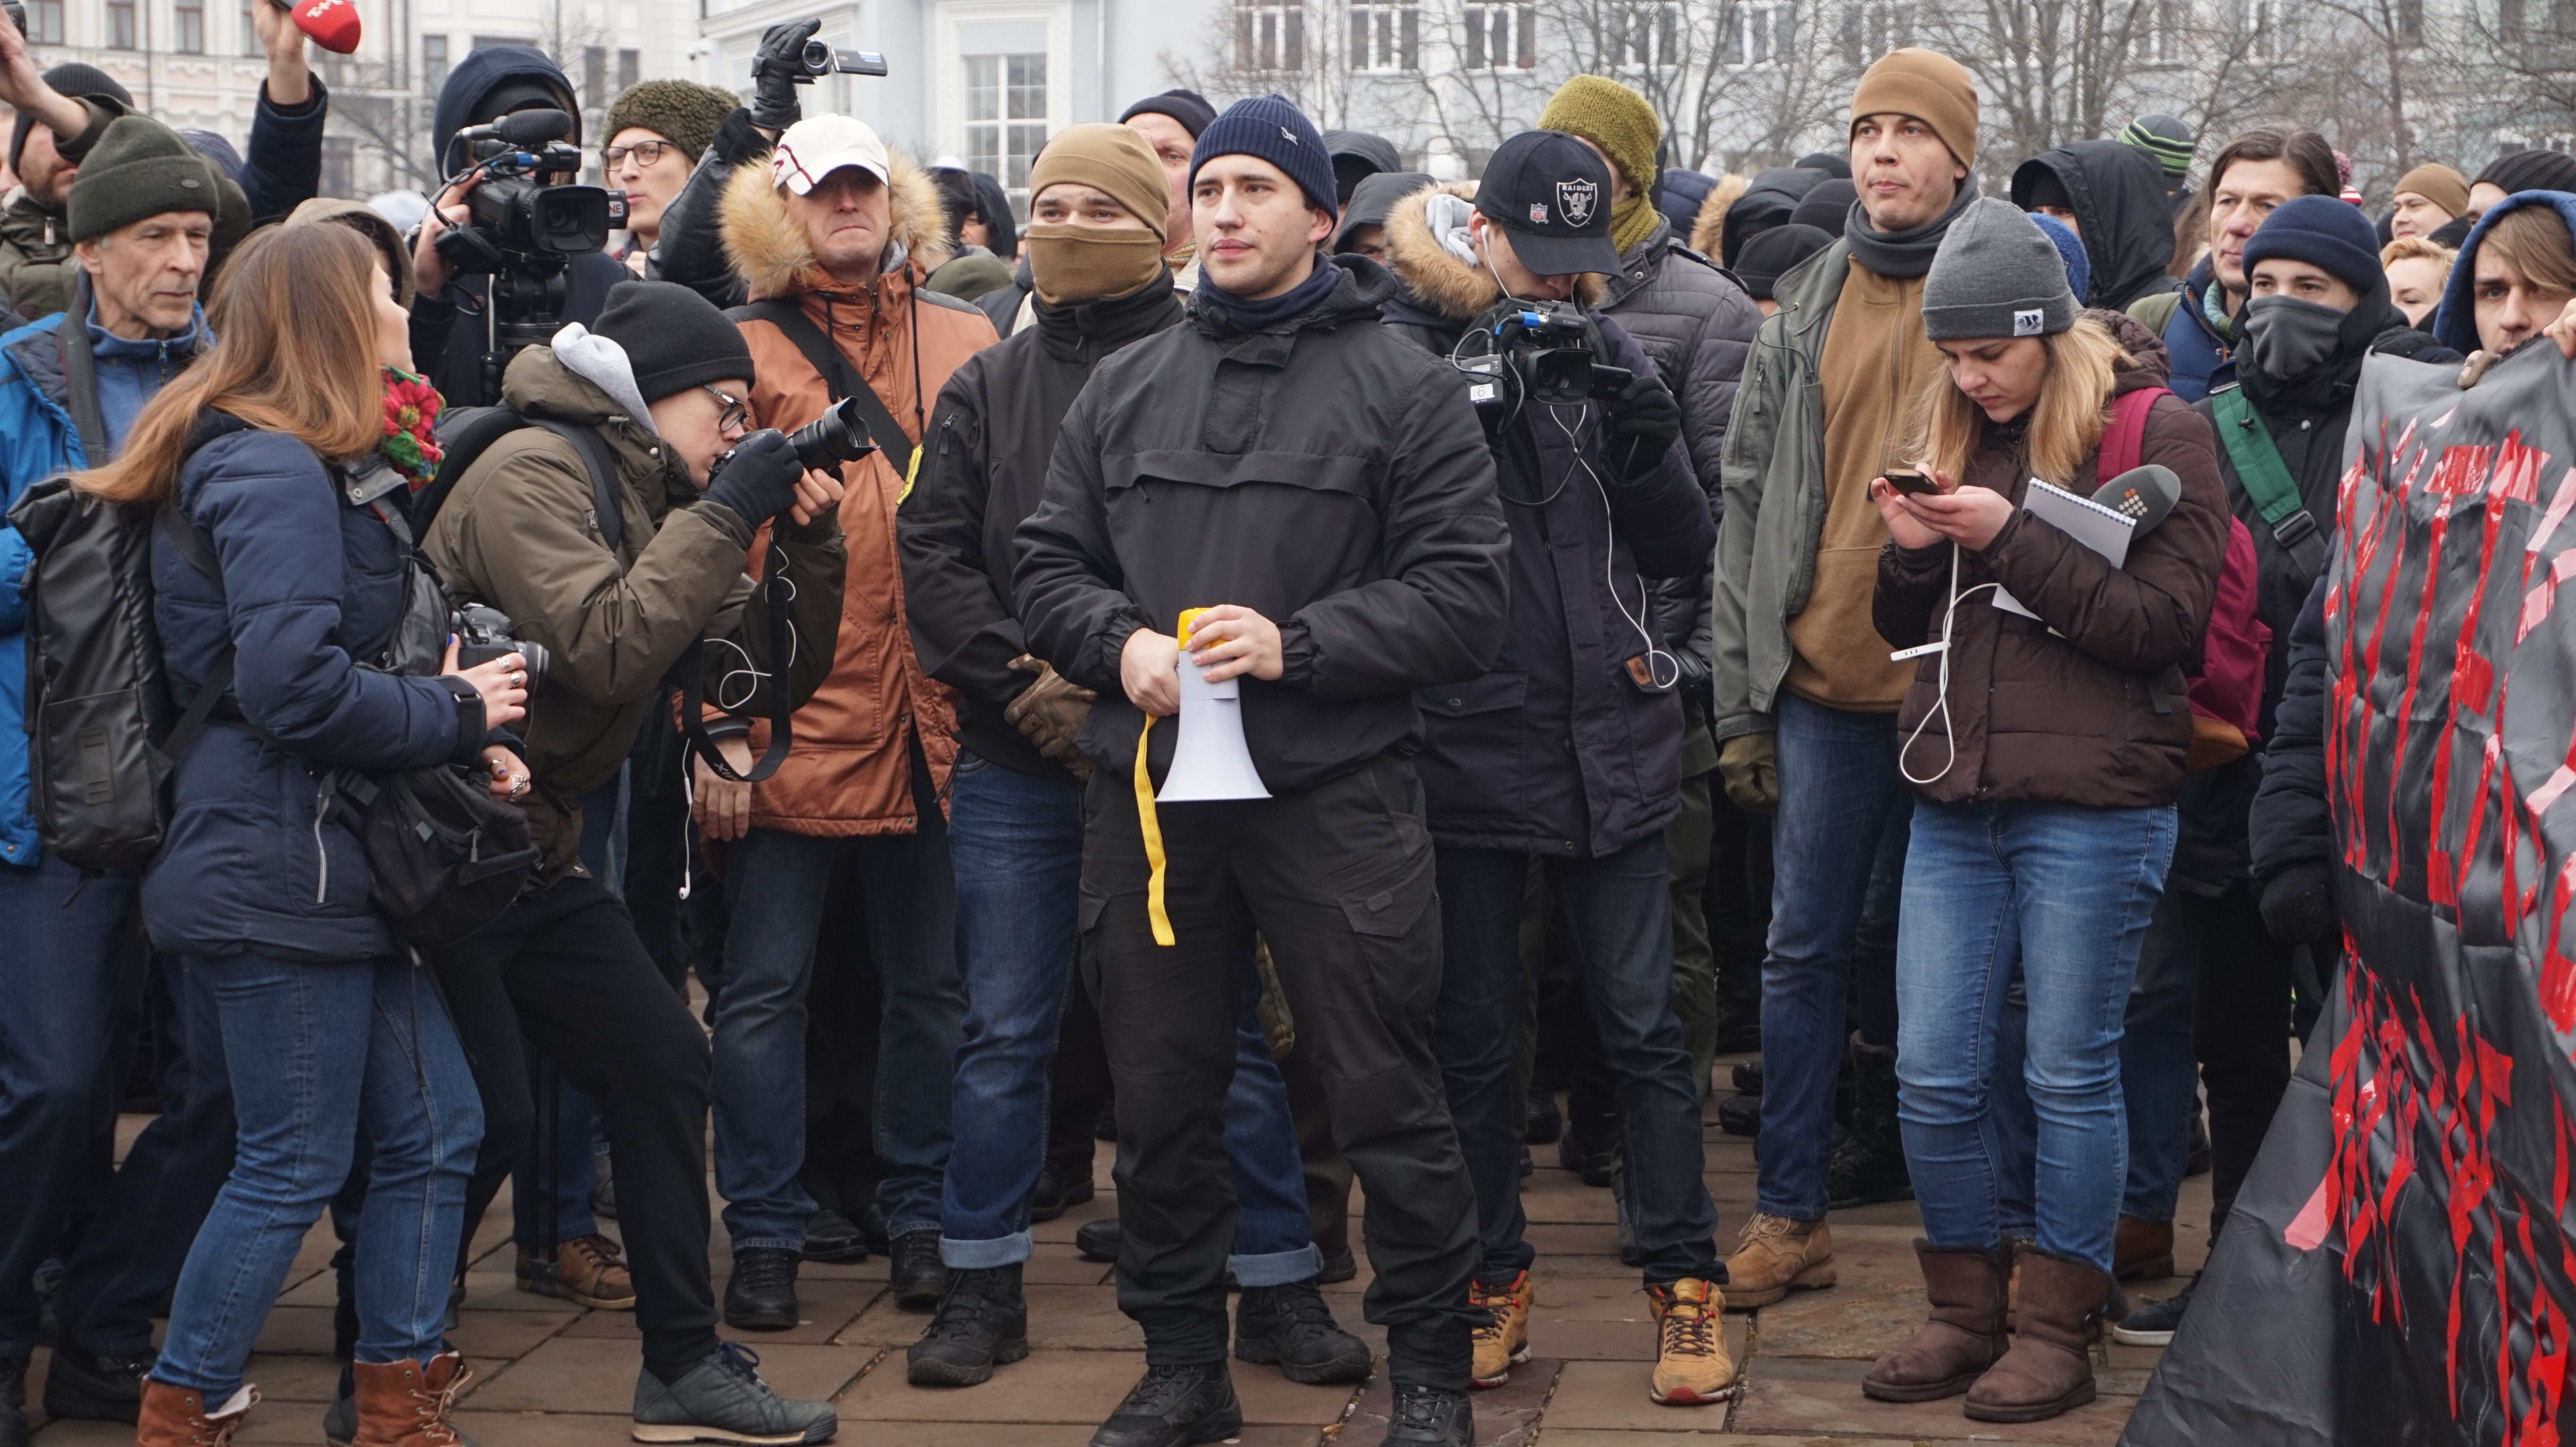 «Слава нації», молитви та рок-н-рол. У Києві пройшла акція «Свободу архітекторам» (ФОТО)